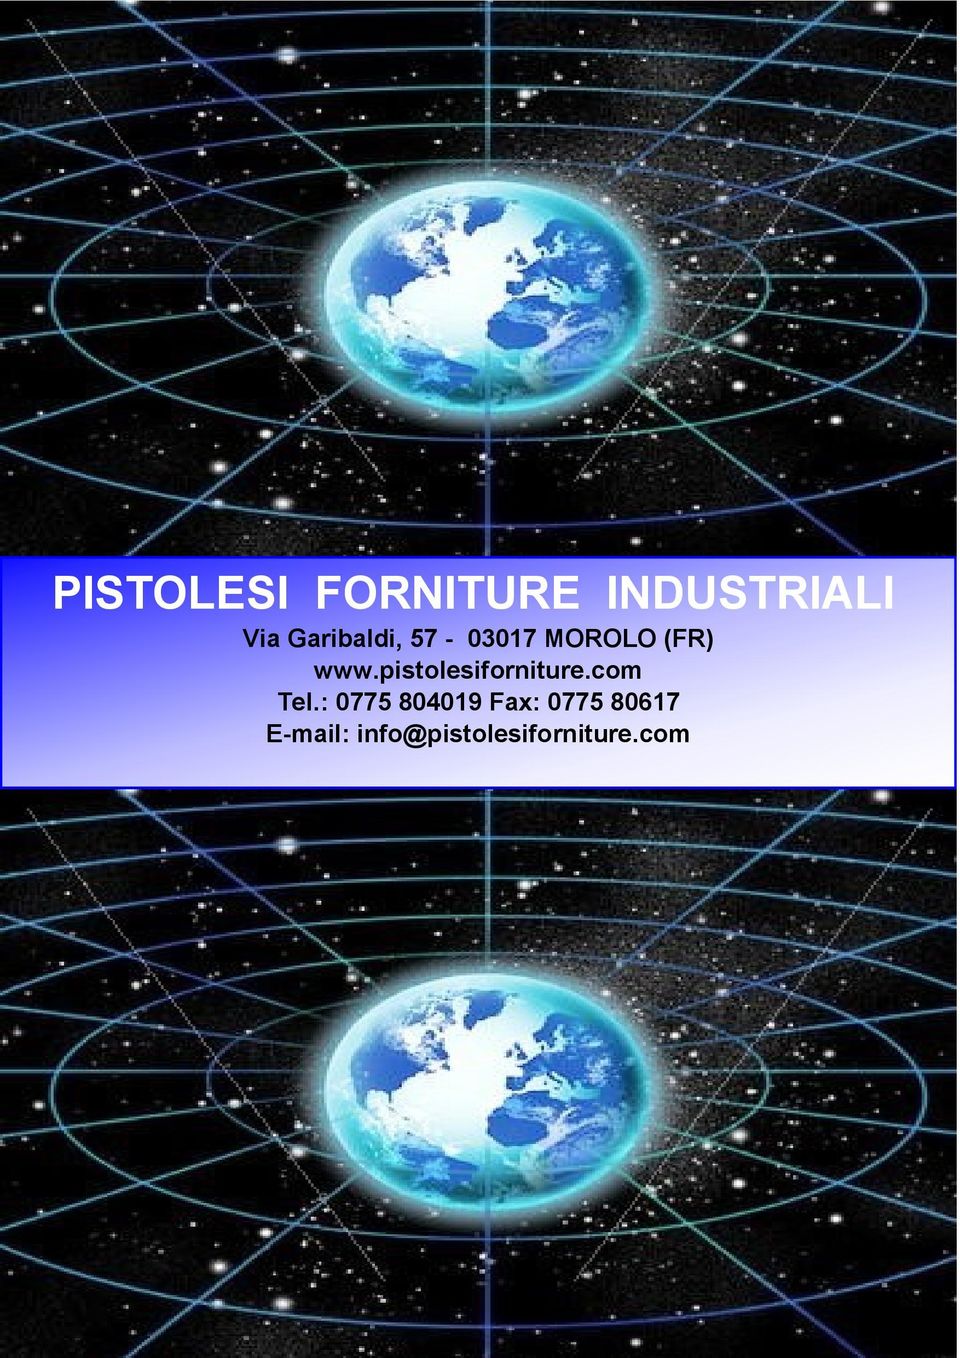 pistolesiforniture.com Tel.